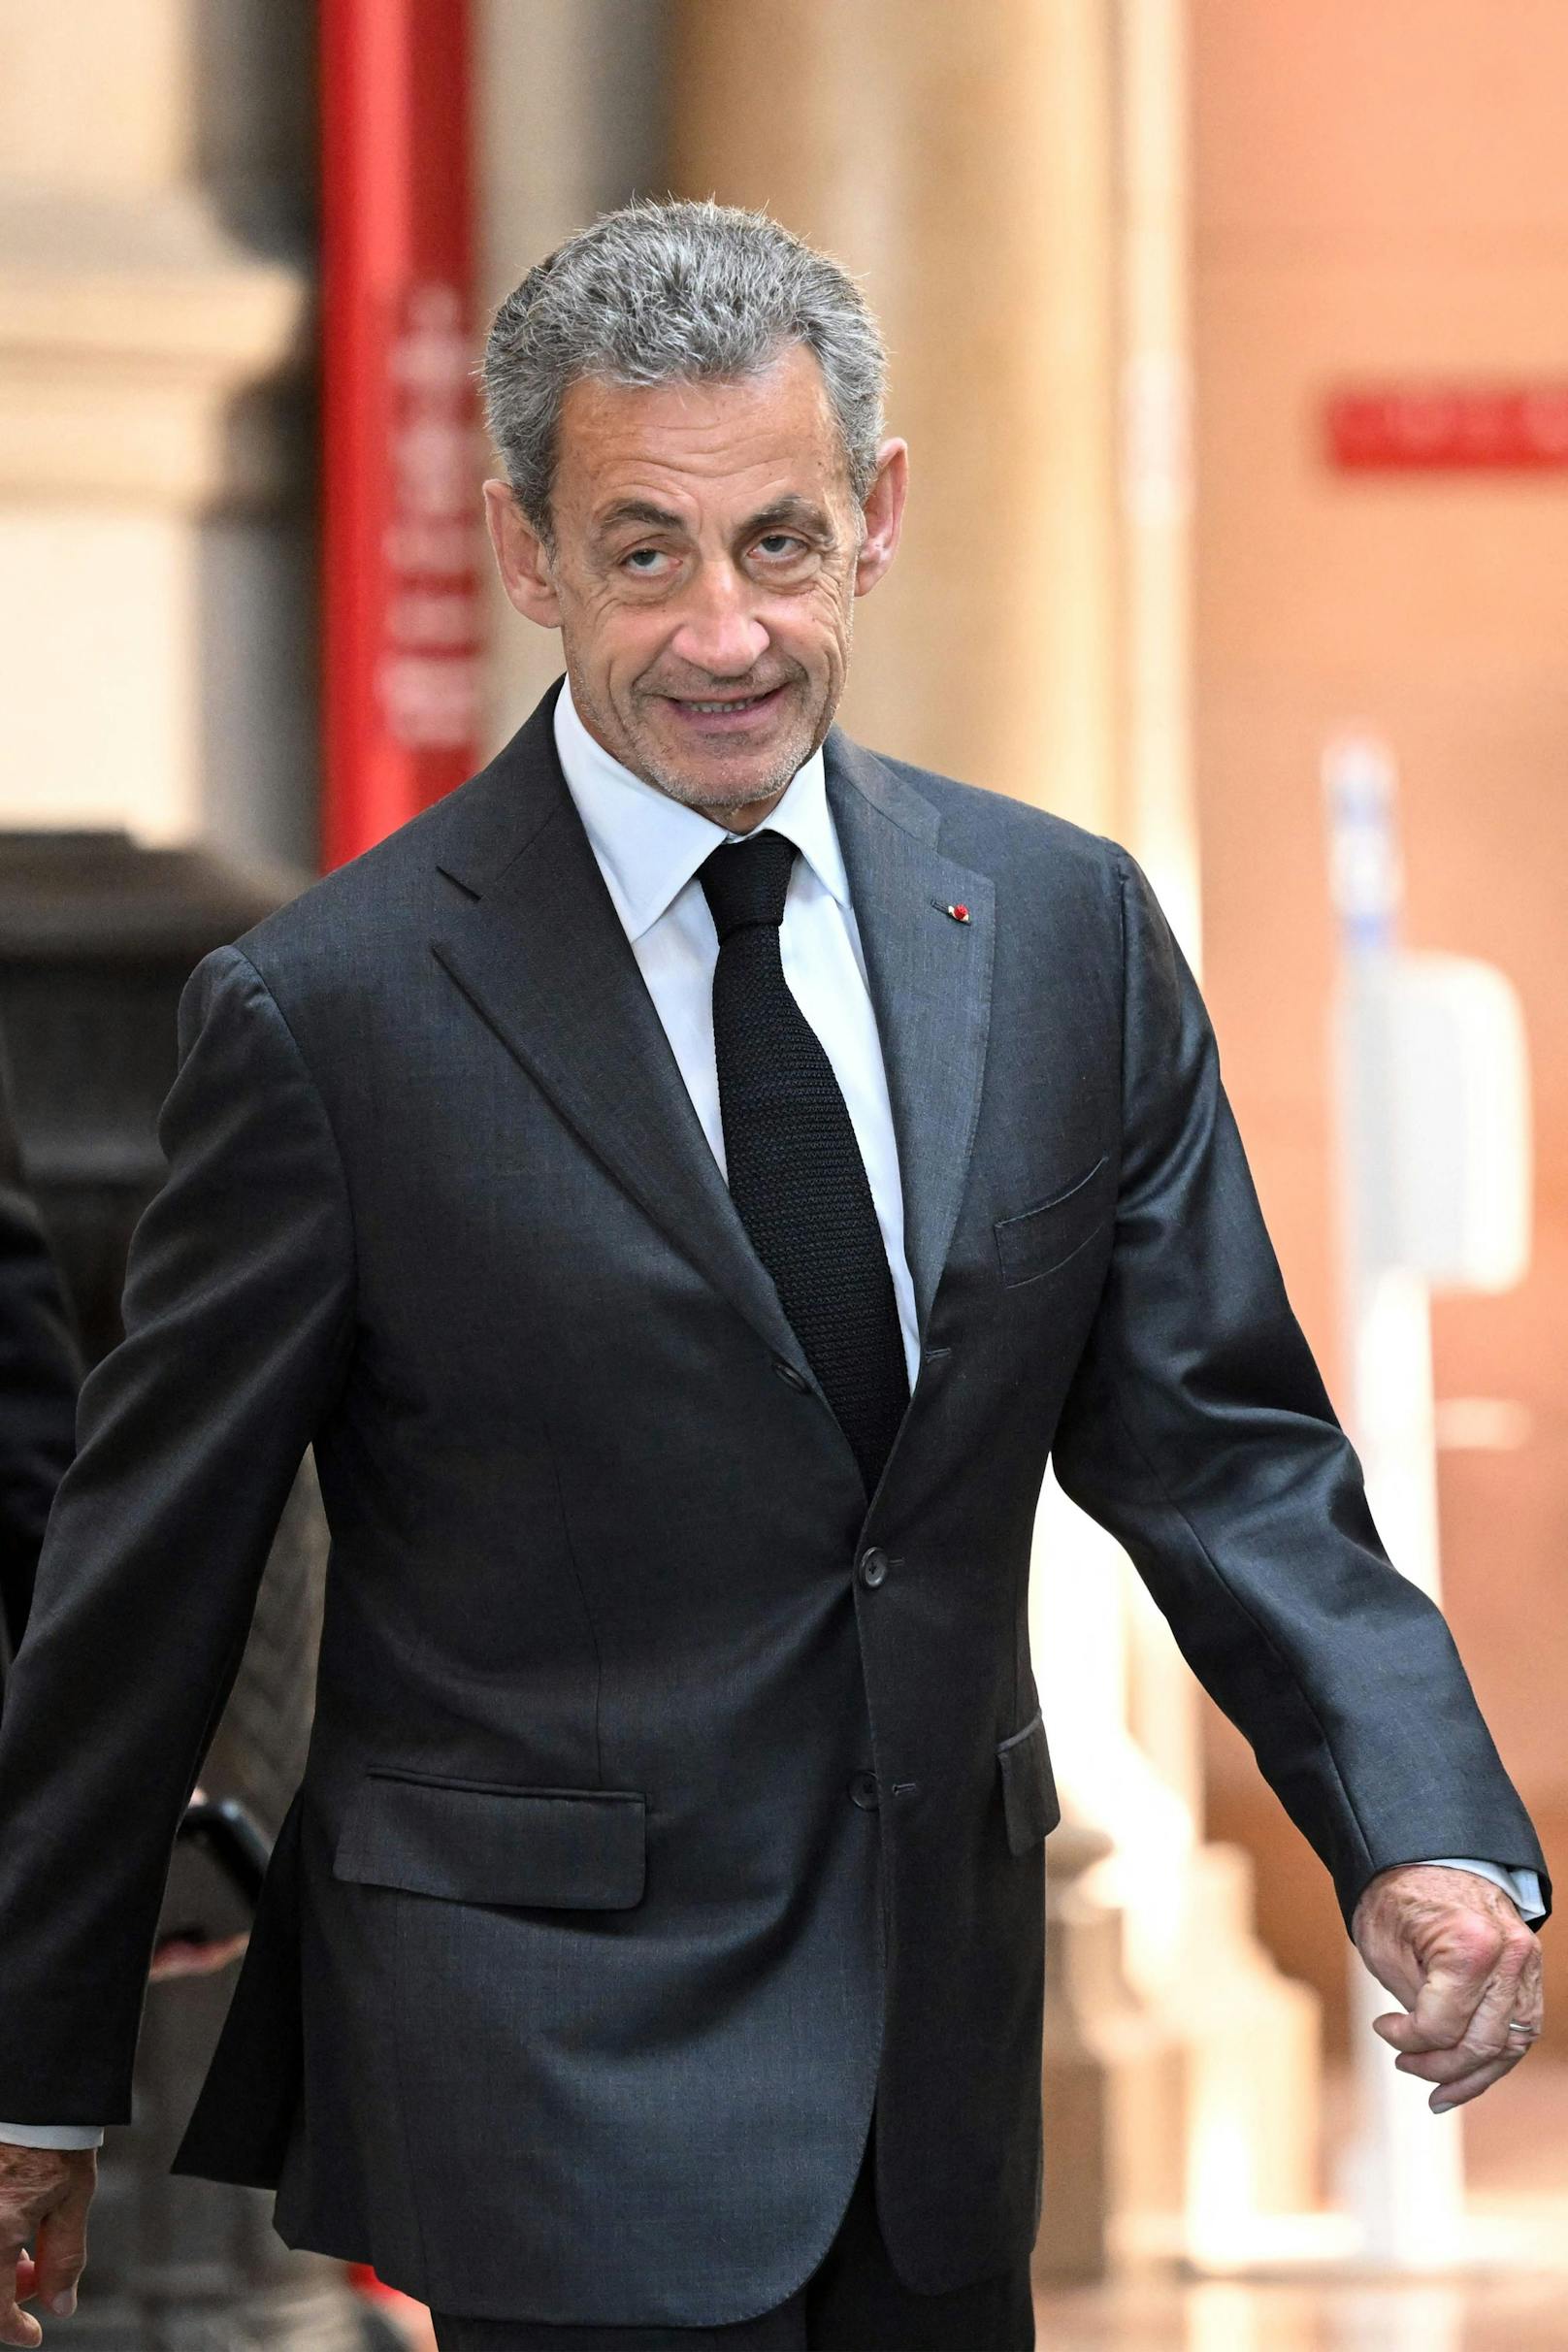 Der ehemalige französische Staatschef Nicolas Sarkozy wurde am Mittwoch in einem Berufungsverfahren in Paris wegen Bestechung und Einflussnahme in der Abhöraffäre zu drei Jahren Haft, davon ein Jahr ohne Bewährung, verurteilt, eine Strafe, die noch nie zuvor für einen ehemaligen Präsidenten verhängt worden war, wie die französische Zeitung <a href="https://www.lefigaro.fr/actualite-france/affaire-des-ecoutes-nicolas-sarkozy-condamne-en-appel-a-trois-ans-de-prison-dont-un-an-ferme-20230517" target="_blank">"Le Figaro"</a> schreibt.